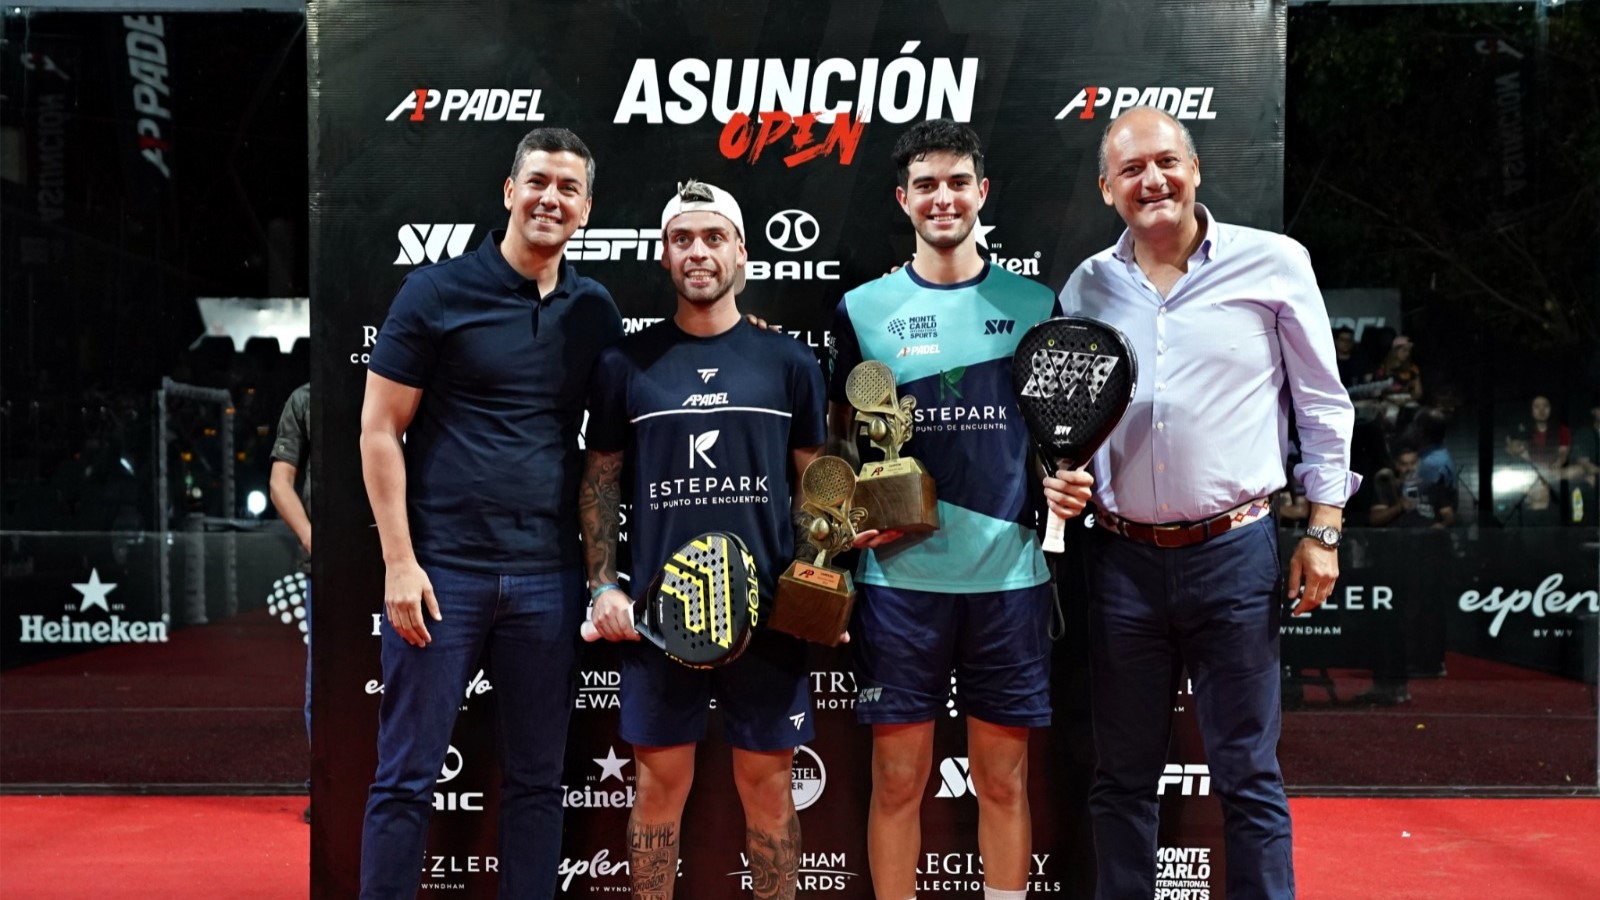 A1 Padel Asuncion Open – Il titolo per De Pascual/Alfonso!